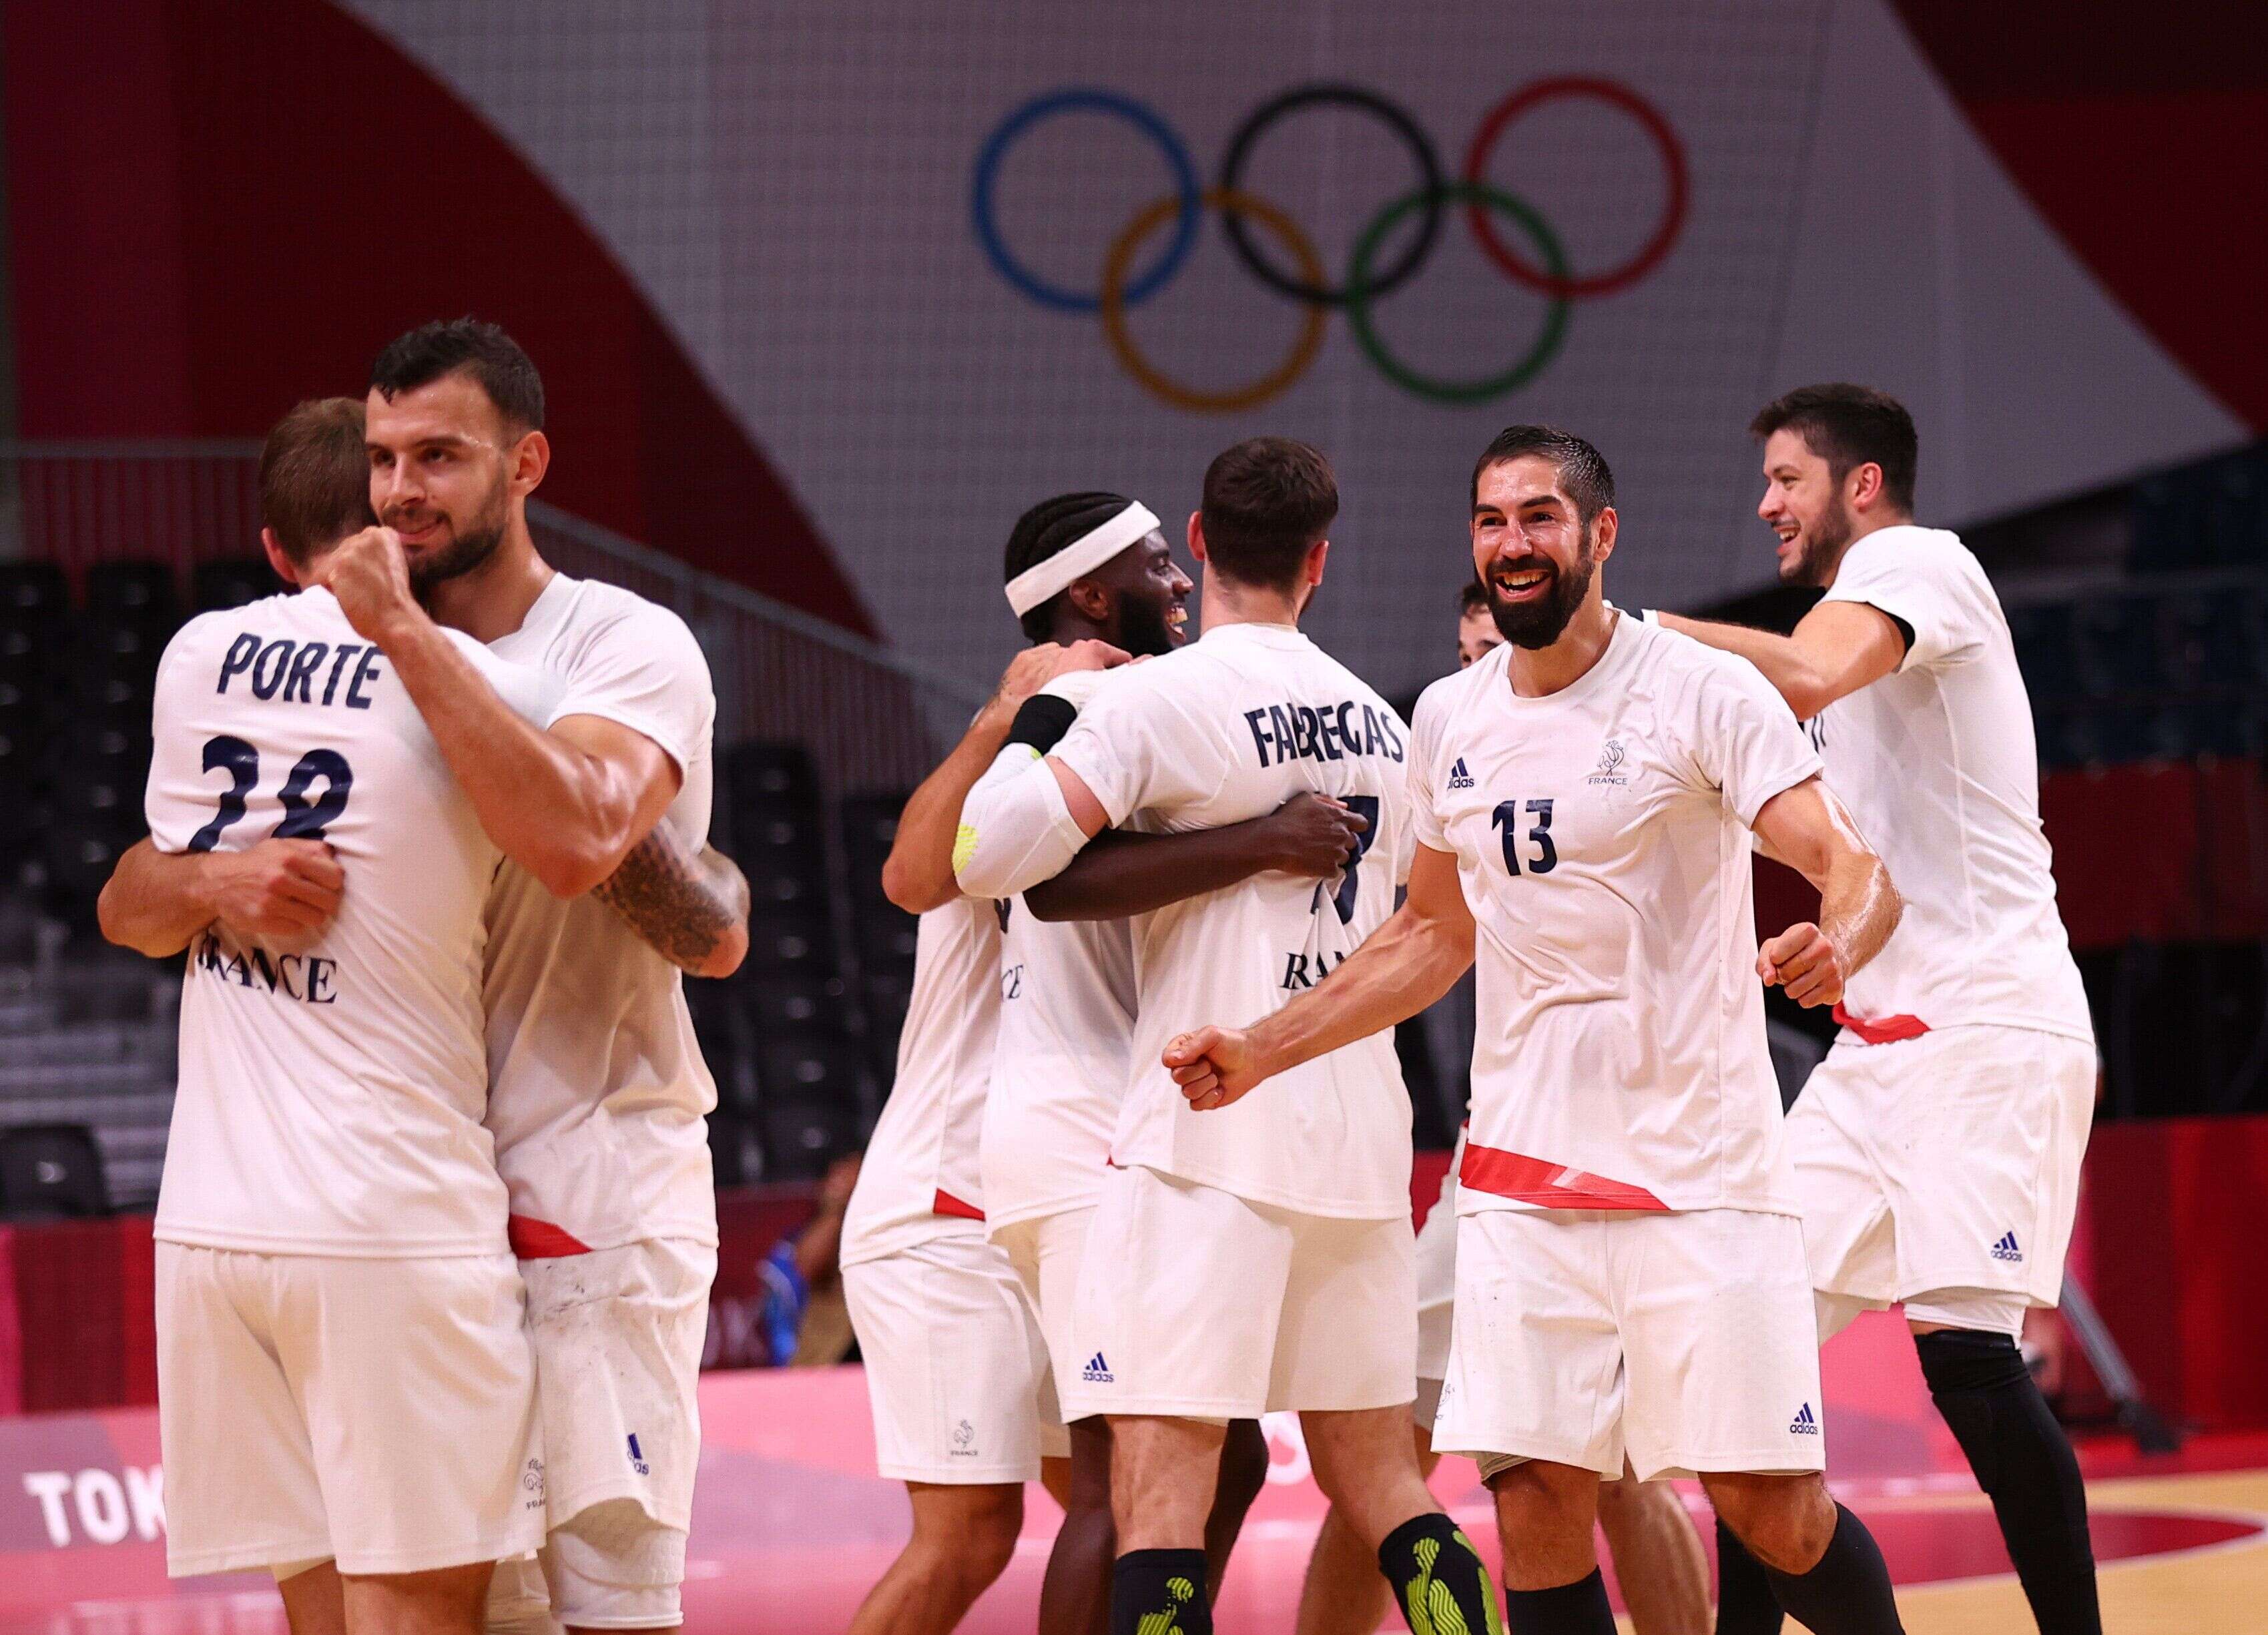 En battant l'Egypte en demi-finale des Jeux olympiques de Tokyo, Nikola Karabatic et les handballeurs français avaient idéalement lancé le jeudi des sports collectifs français.